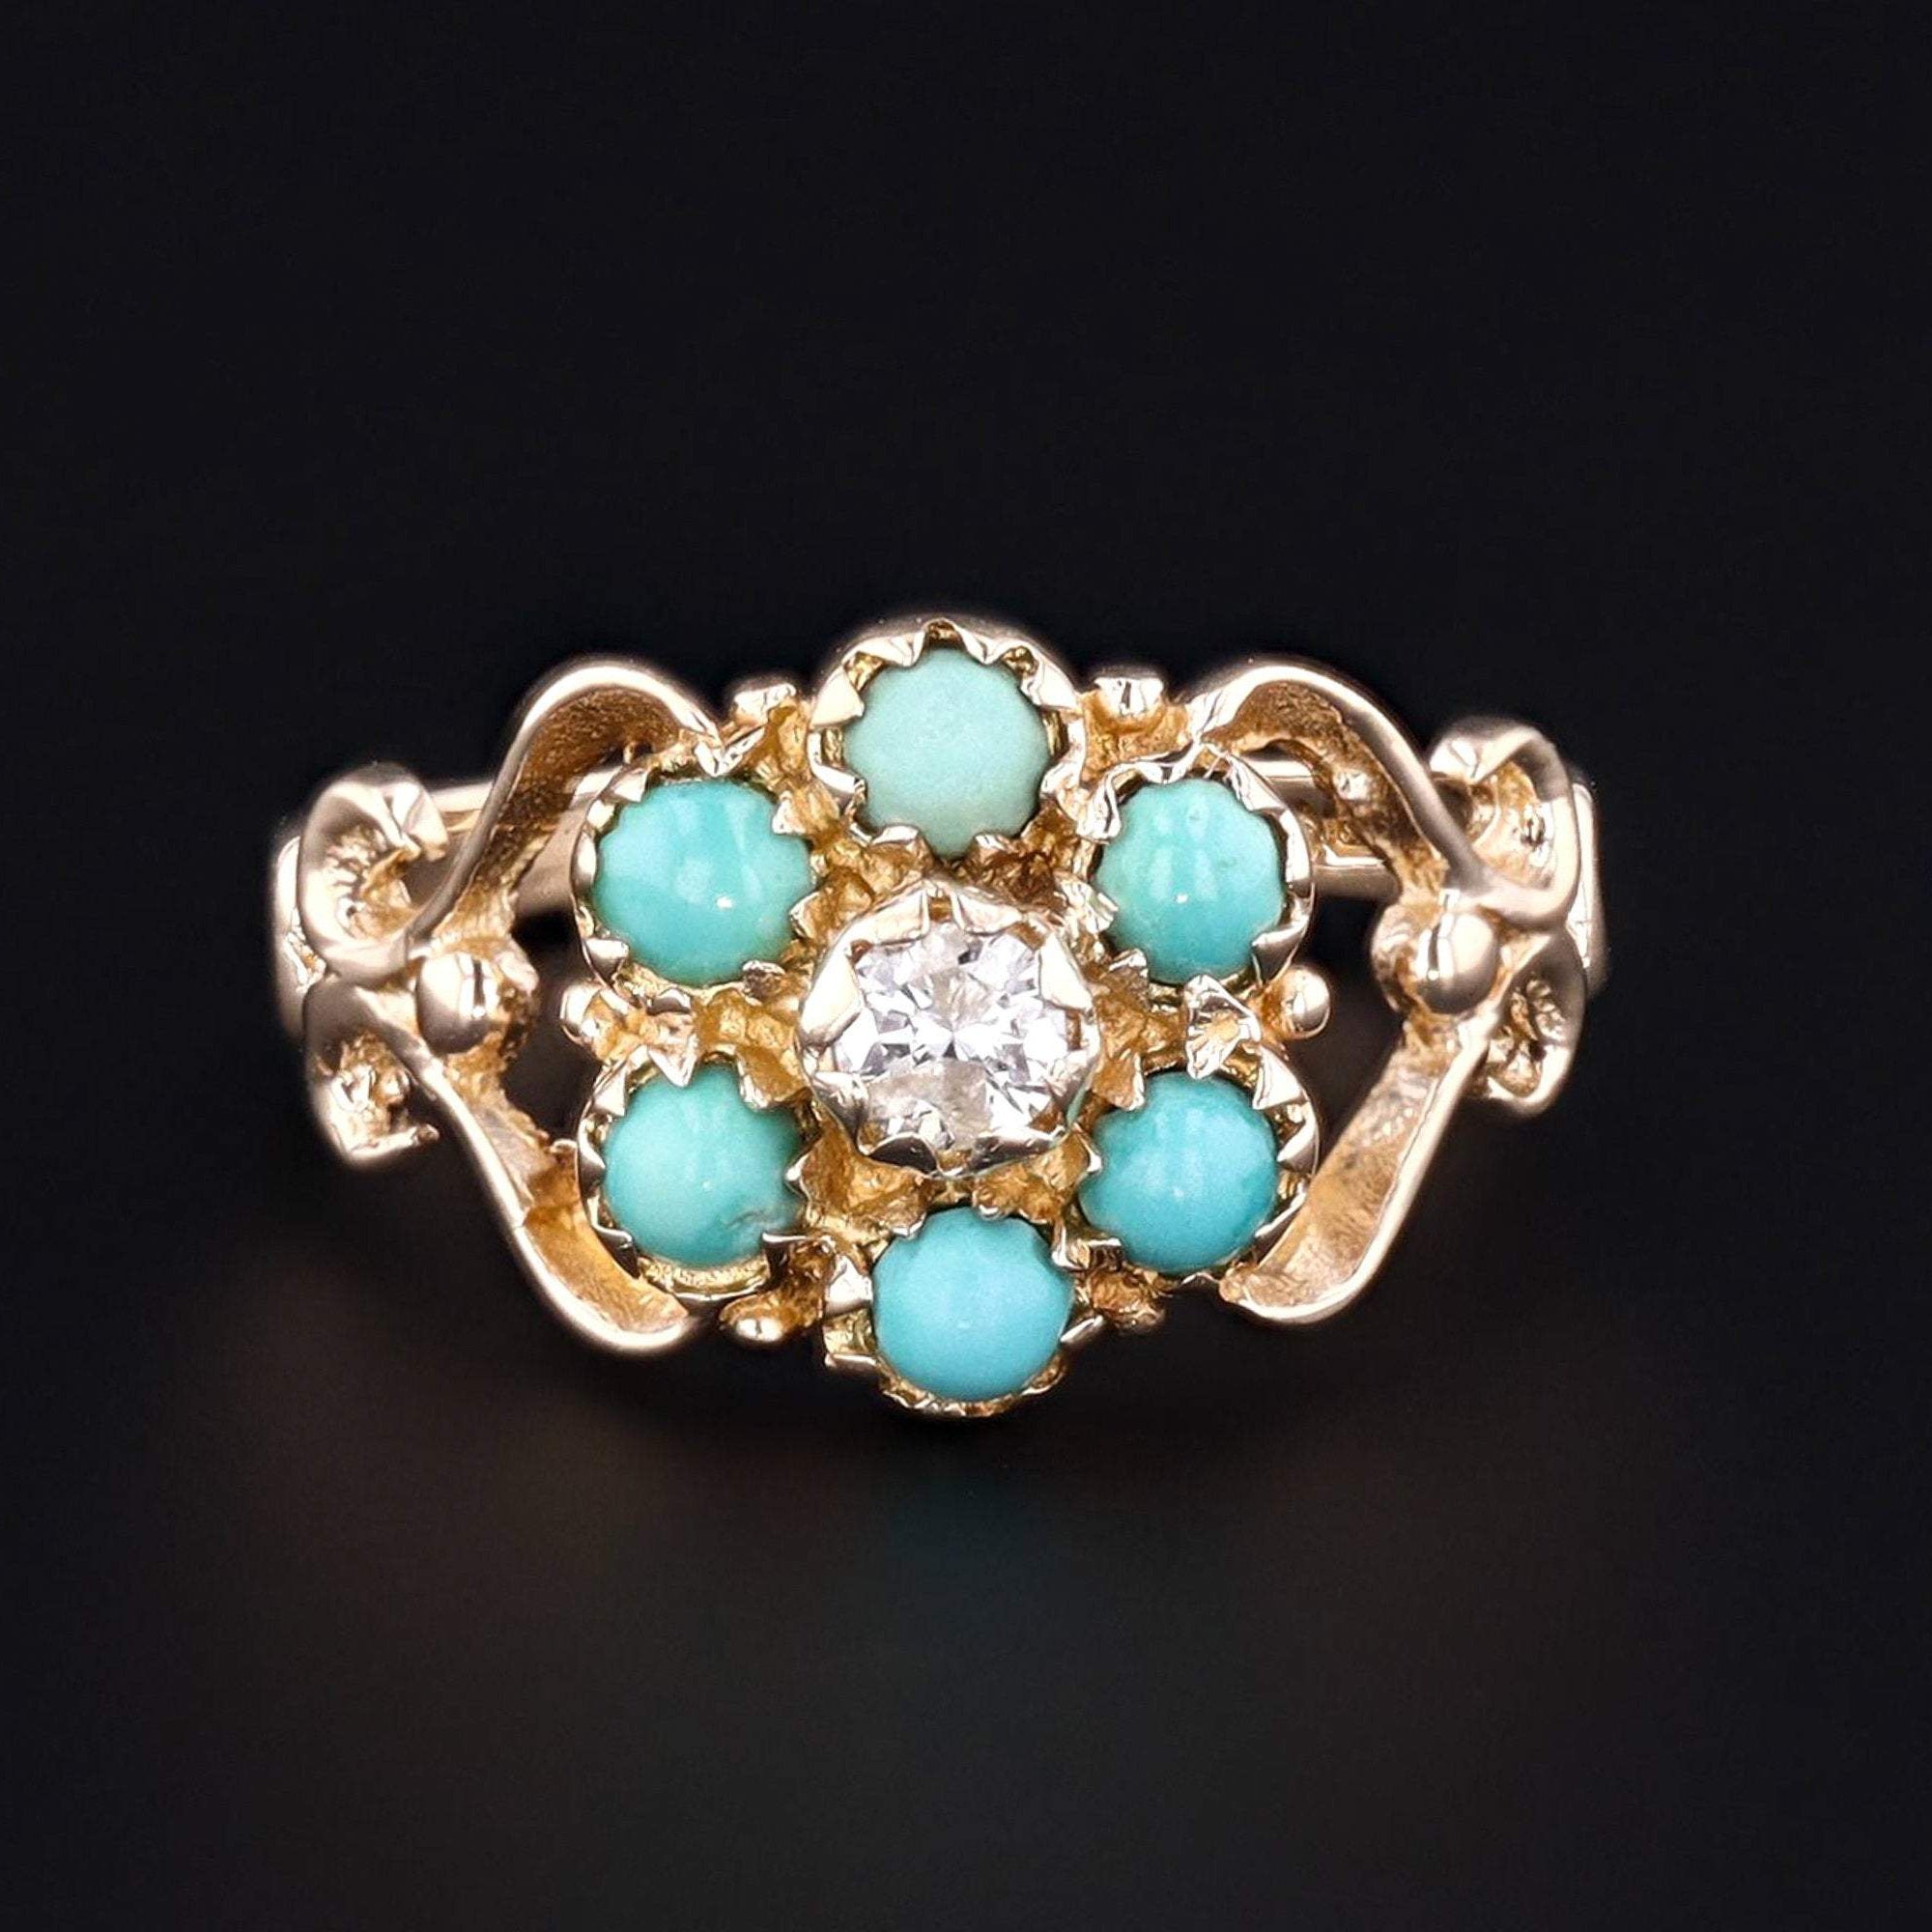 Vintage Turquoise & Diamond Ring | 9ct Gold Ring | Vintage Ring | Vintage Turquoise Ring | December Birthstone Ring